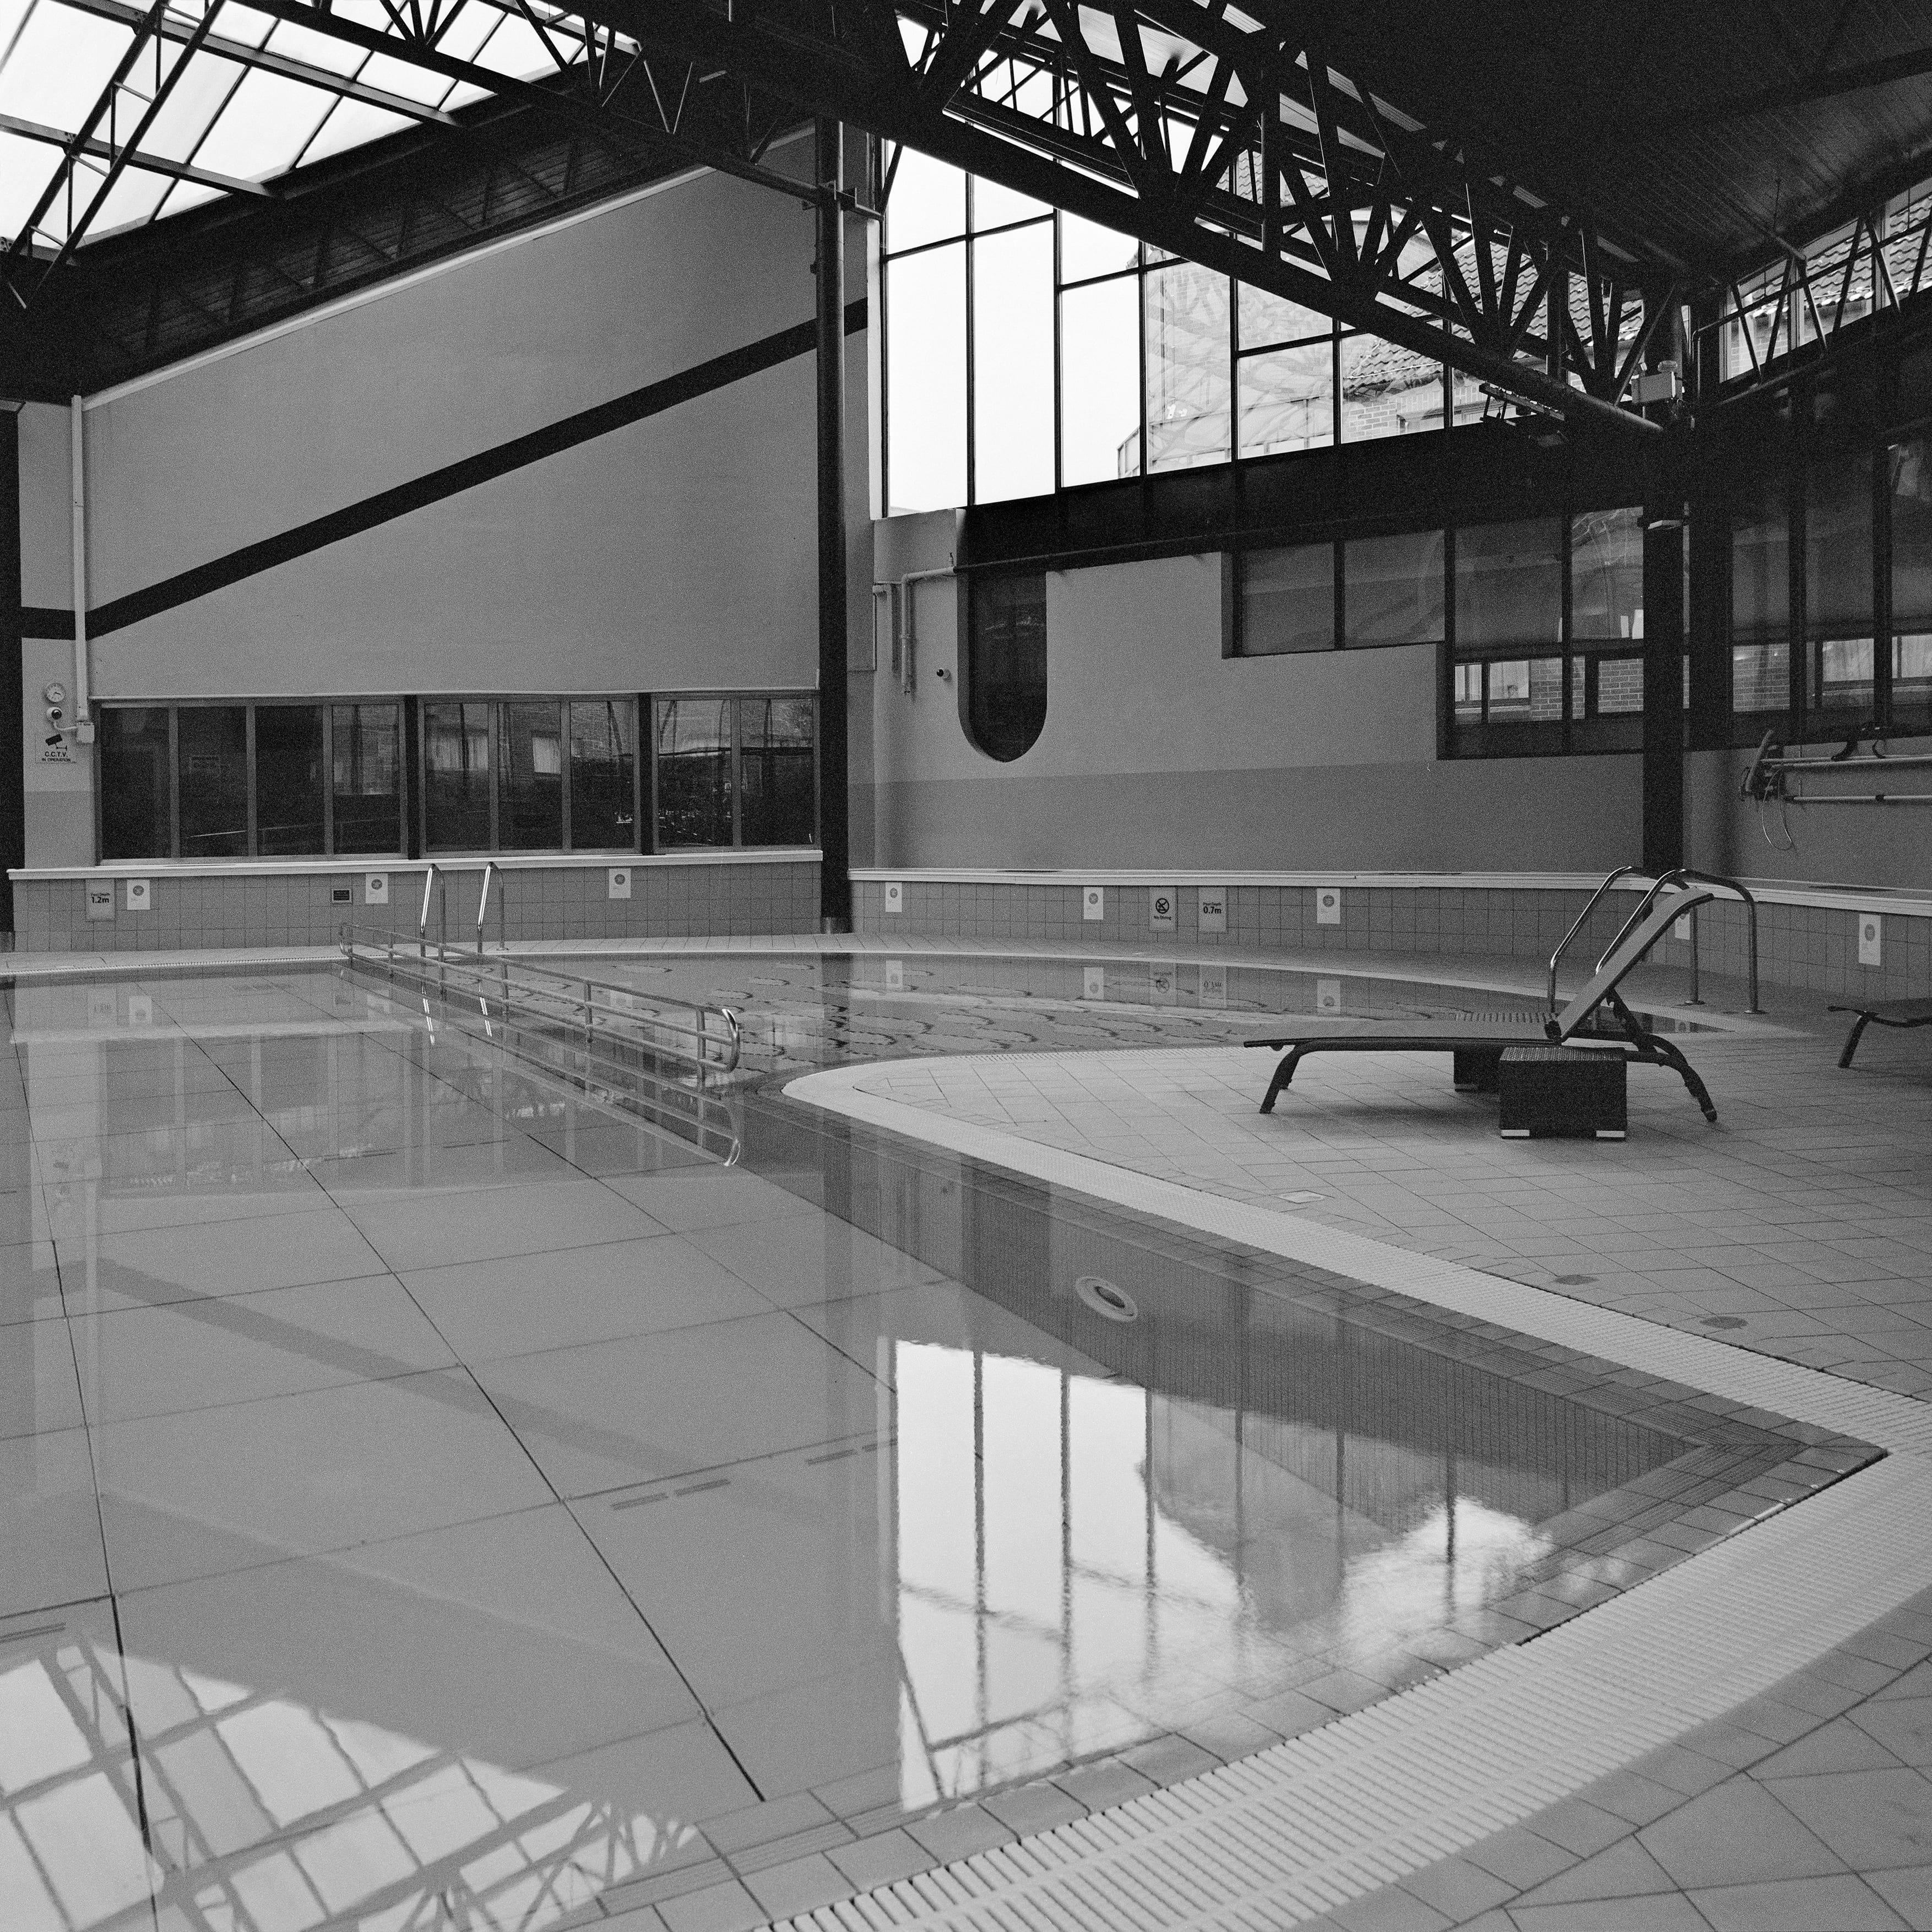 Monochrome Square Architecture Photography: Swimming Pool Design